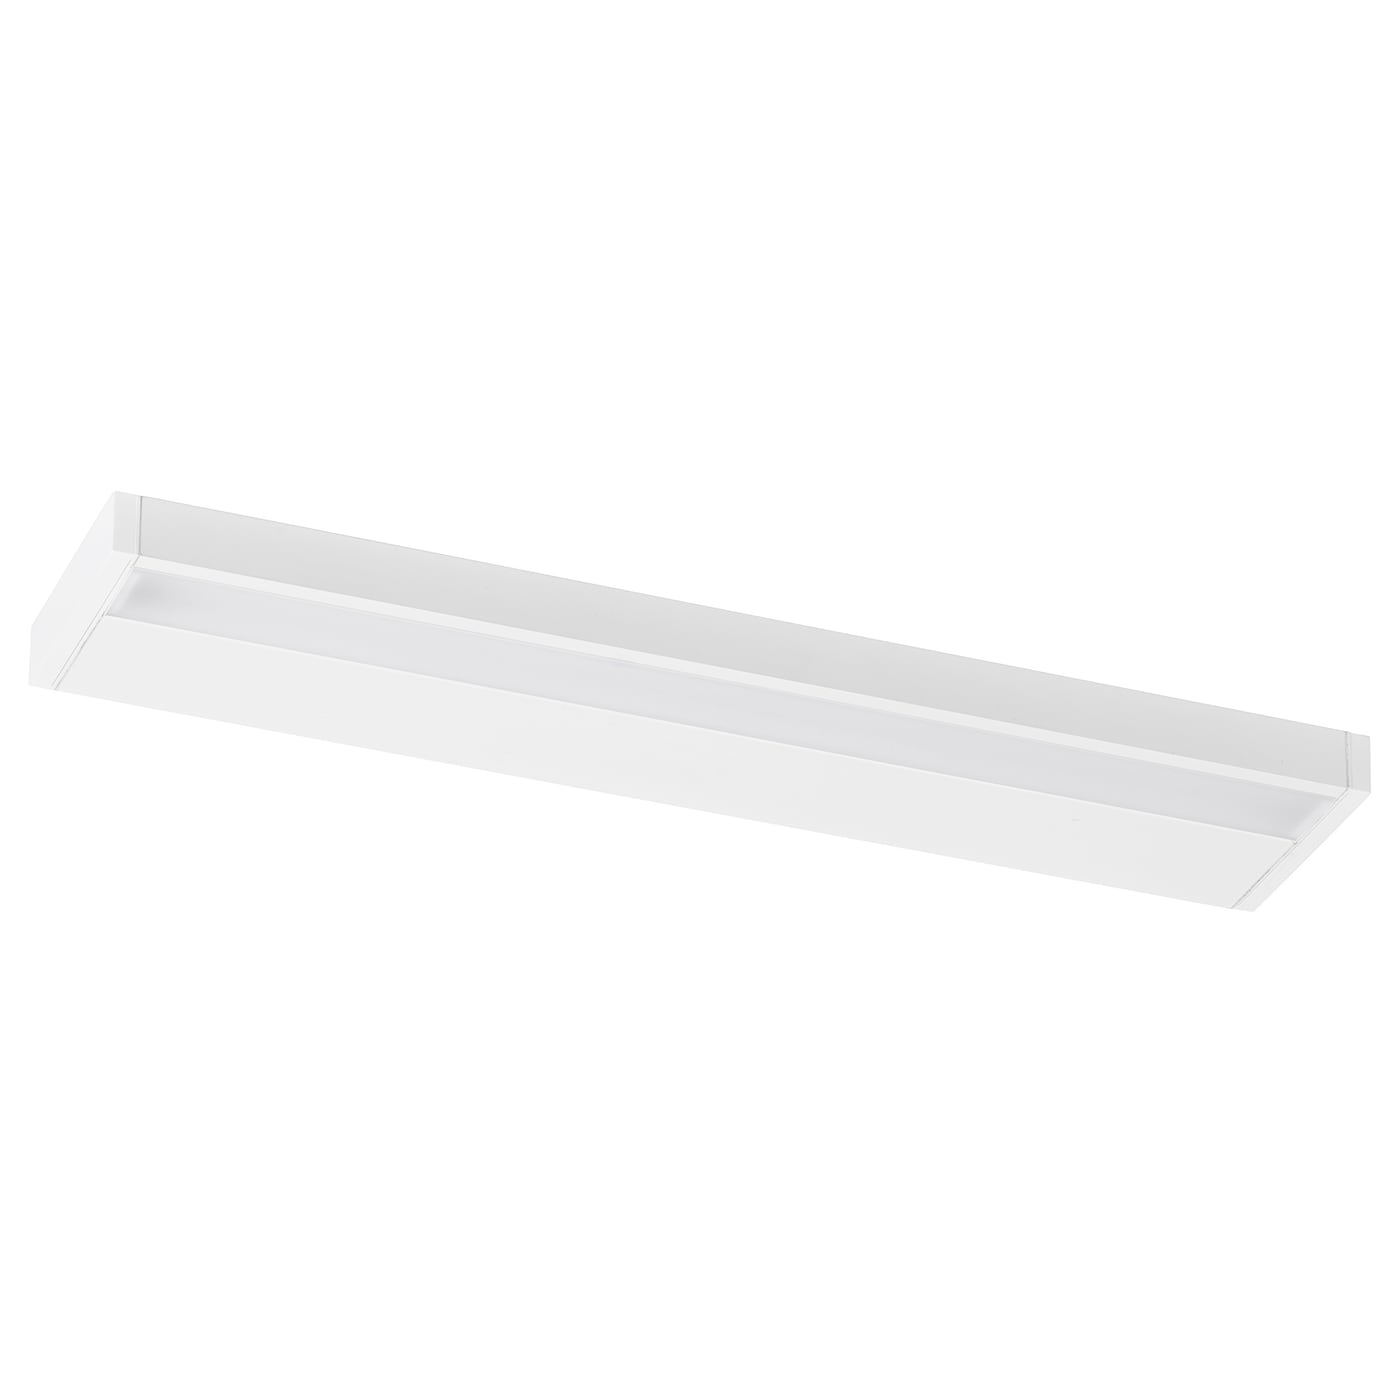 Светодиодная подсветка шкафа/стены - IKEA GODMORGON, 60 см, белый ГОДМОРГОН ИКЕА